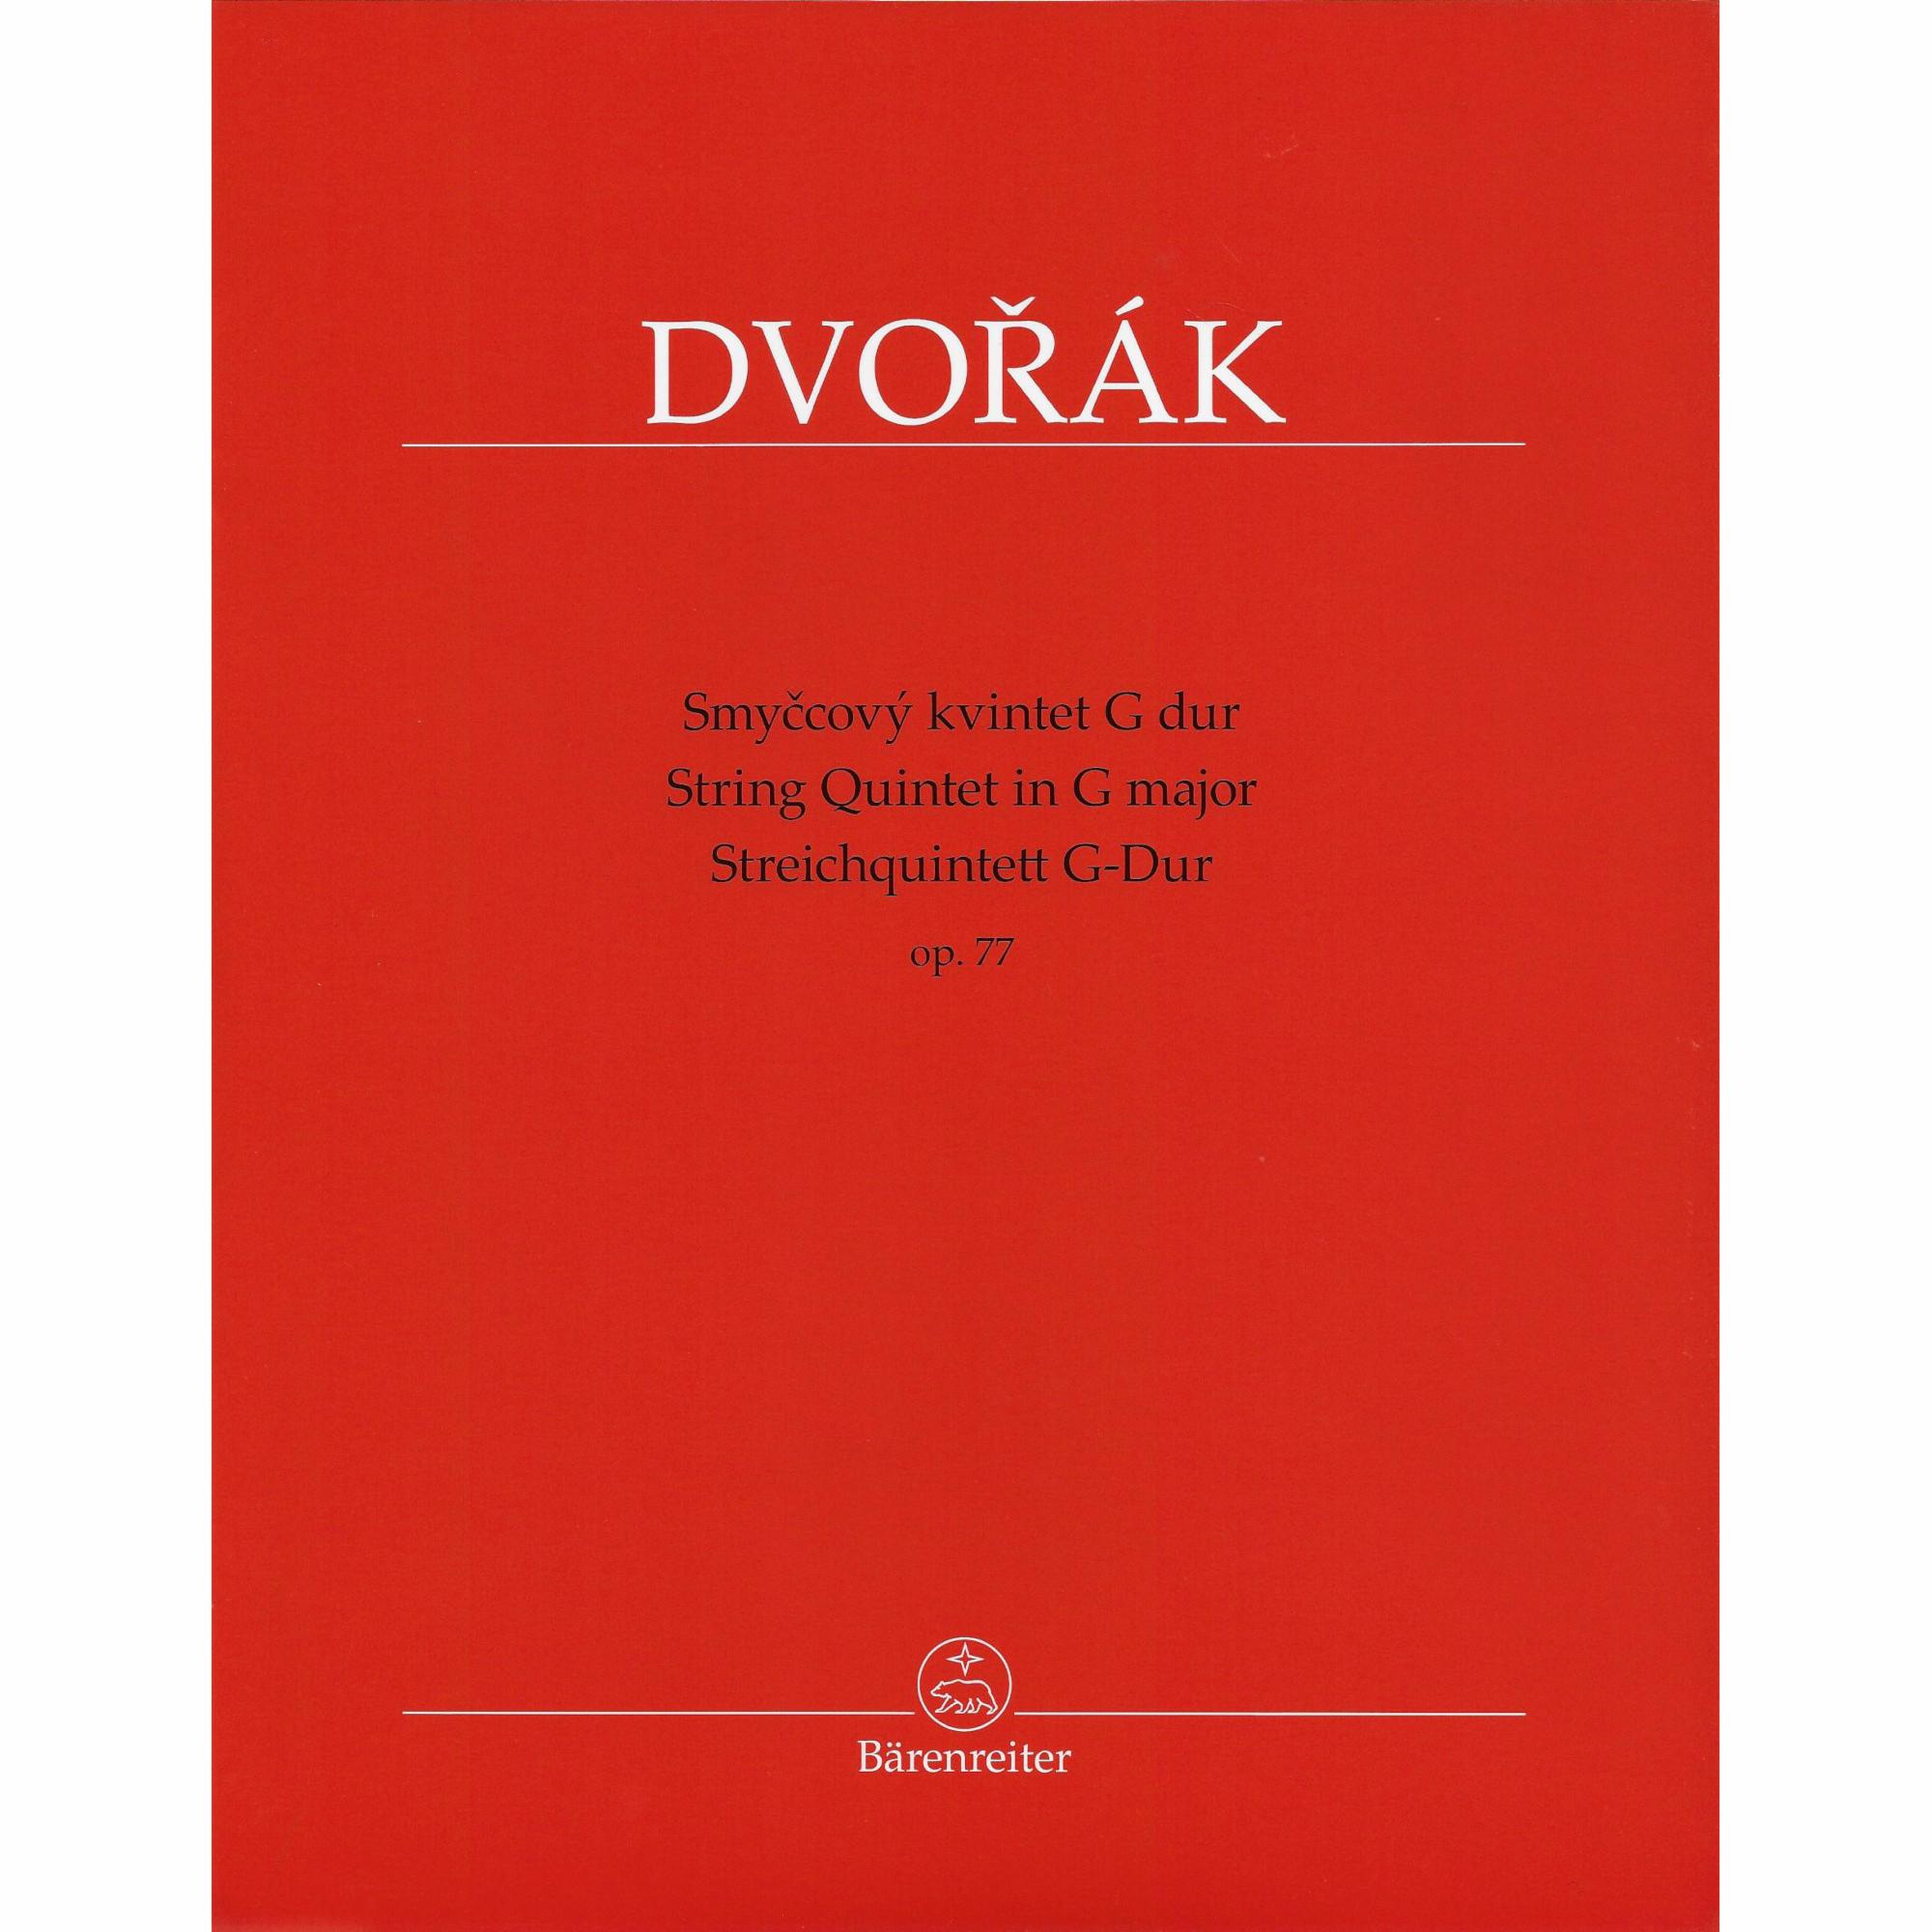 Dvorak -- String Quintet in G Major, Op. 77